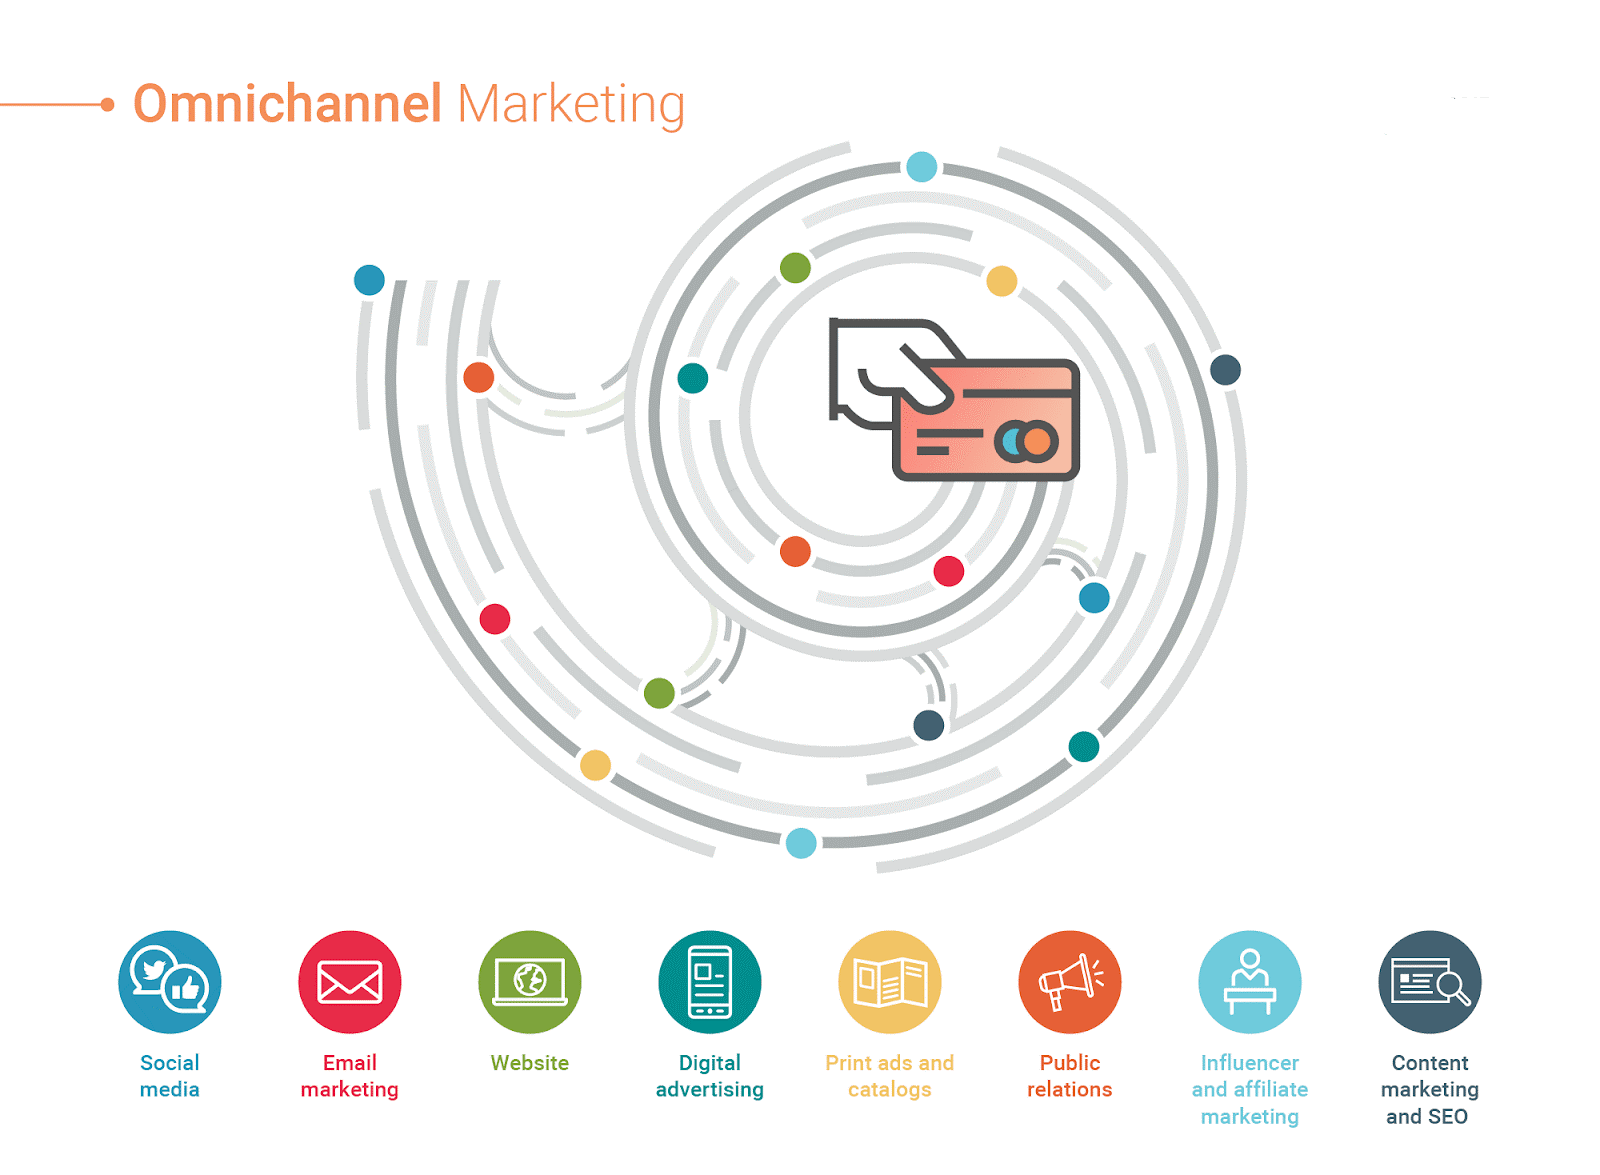 Omni-channel marketing - chiến lược kết hợp đa kênh thời đại mới